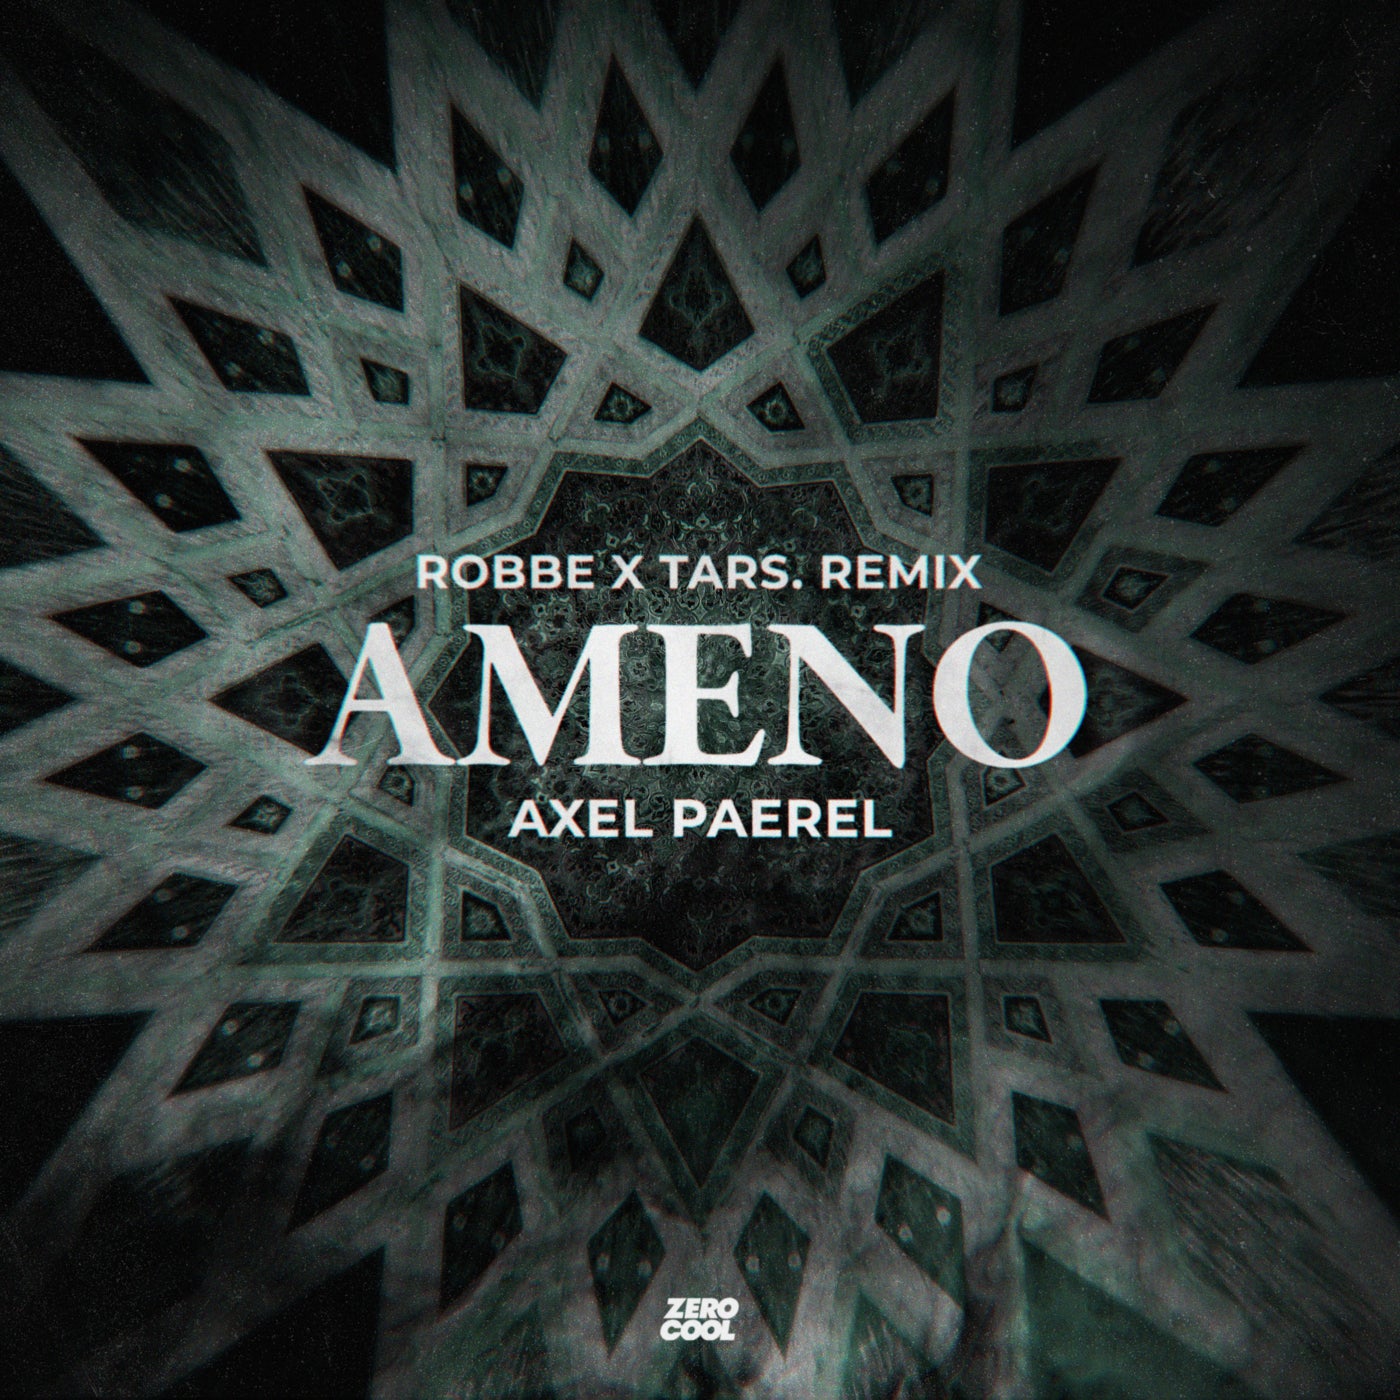 Cover - Robbe, Axel Paerel, TARS. - Ameno (Robbe & TARS. Remix) (Extended Mix)